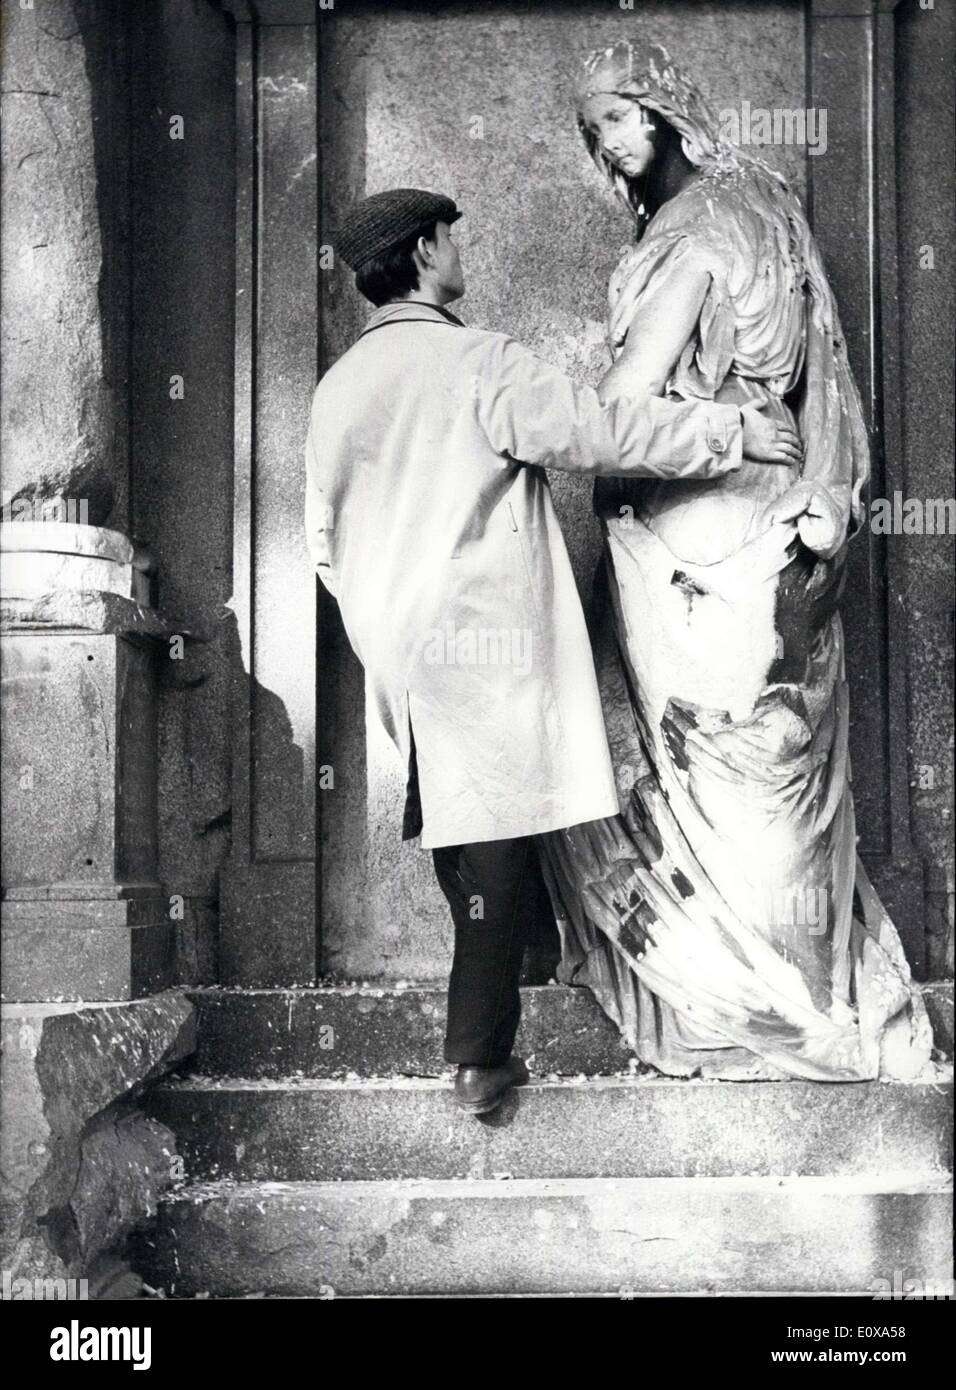 27. Oktober 1965 - kümmern sich um seine '' Bild '' muss dieser jungen Mann, sonst könnte er davon verloren. Unser Fotograf sah diese '' ungleichen Paar '' auf Münchens älteste Kirche-Werft. Stockfoto